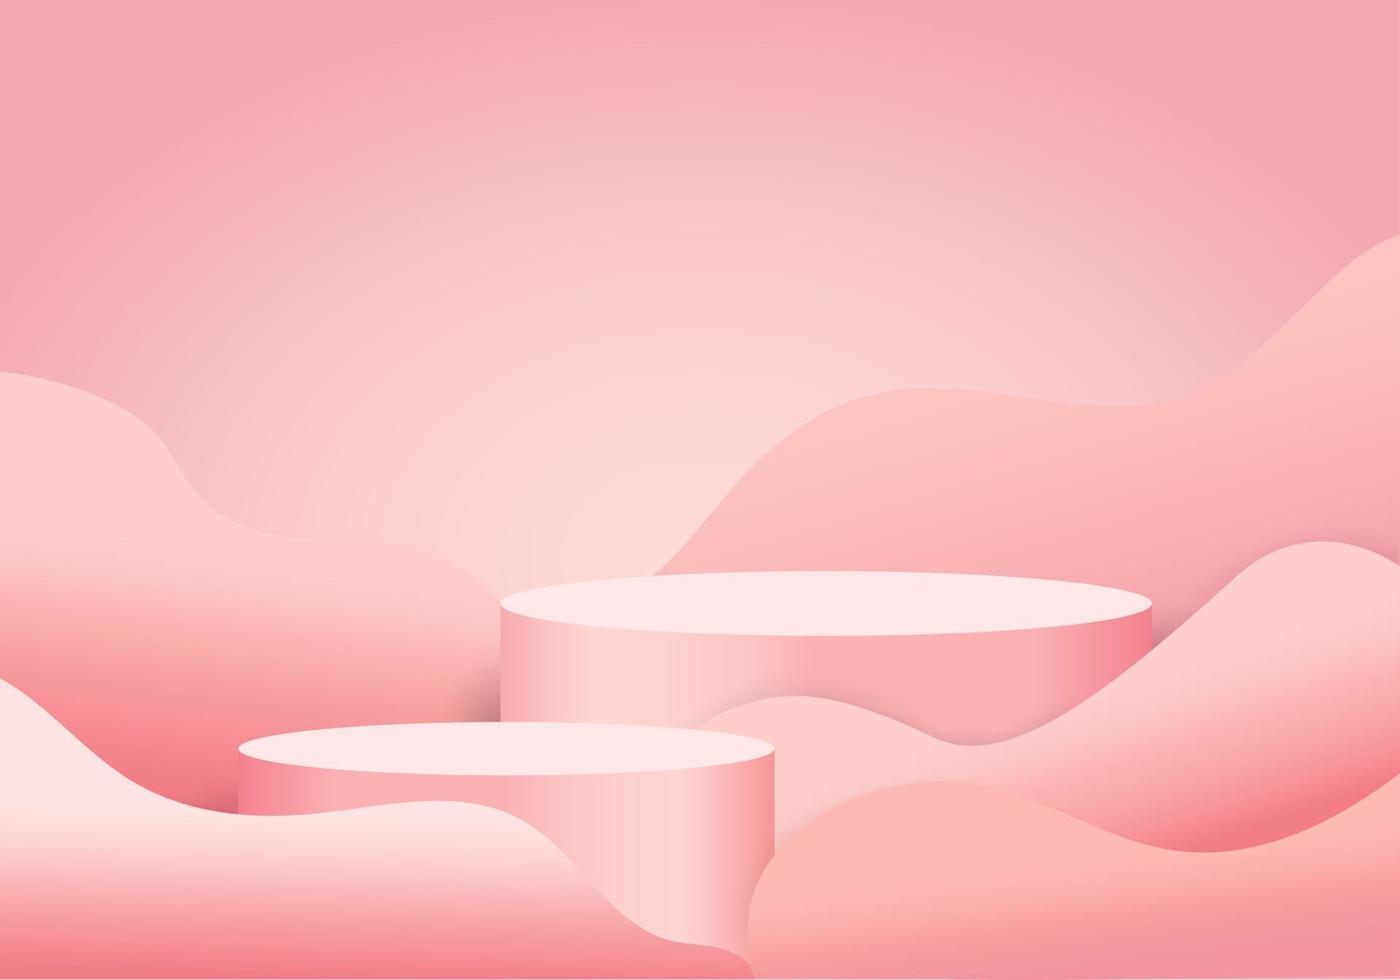 produits d'arrière-plan 3d grande sphère rose l'arrière-plan est une forme d'onde rose. il y a une lumière villageoise derrière la scène pour augmenter le caractère distinctif des produits placés. vecteur